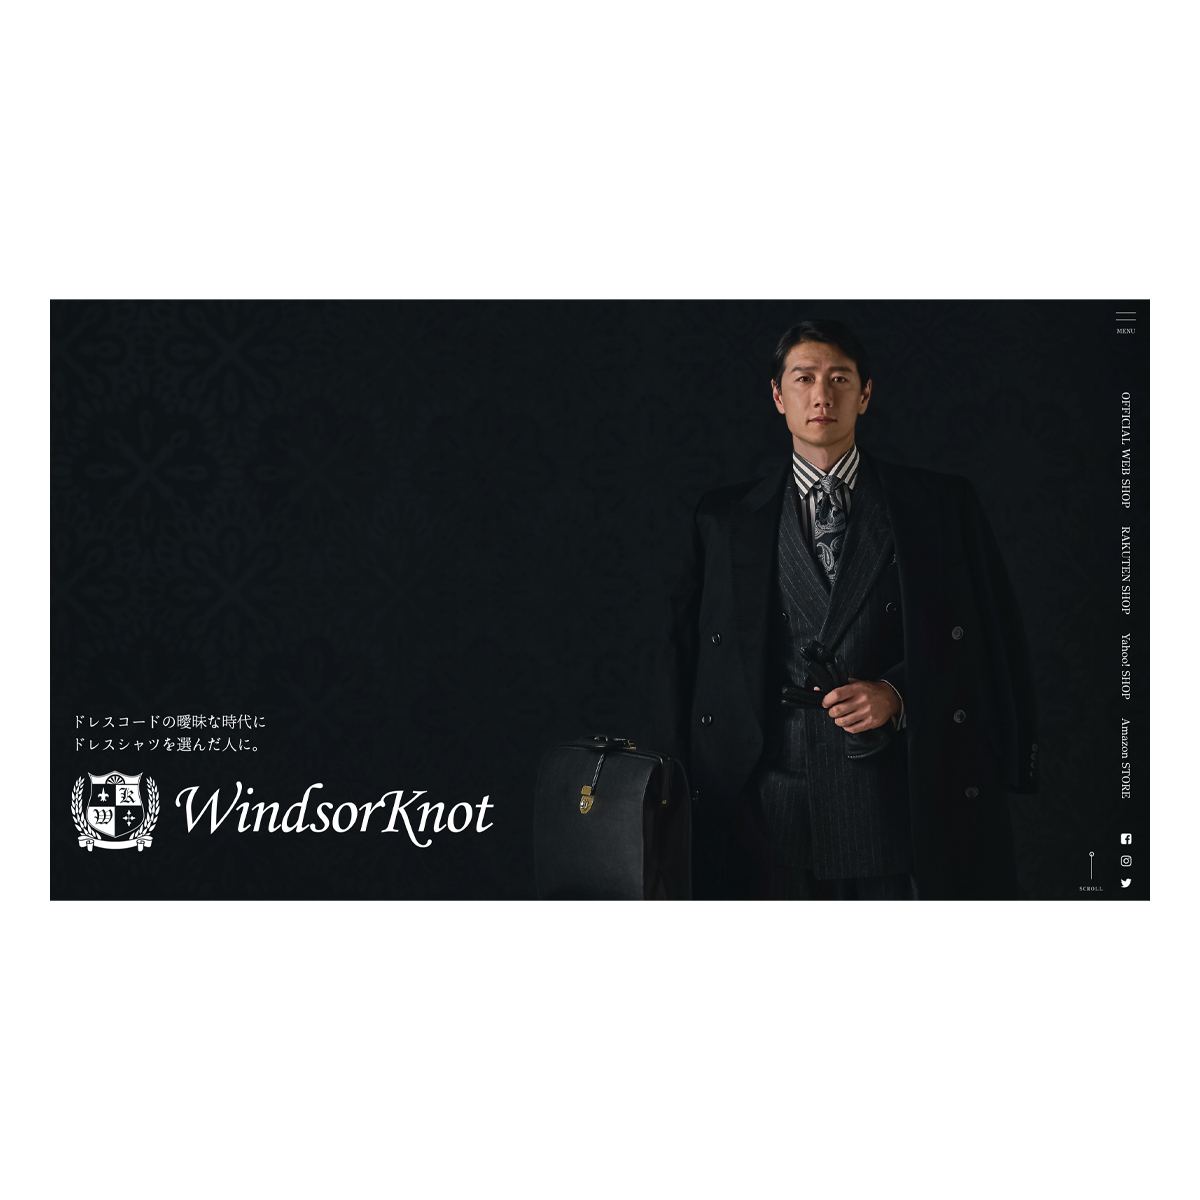 WindsorKnot ブランドサイト